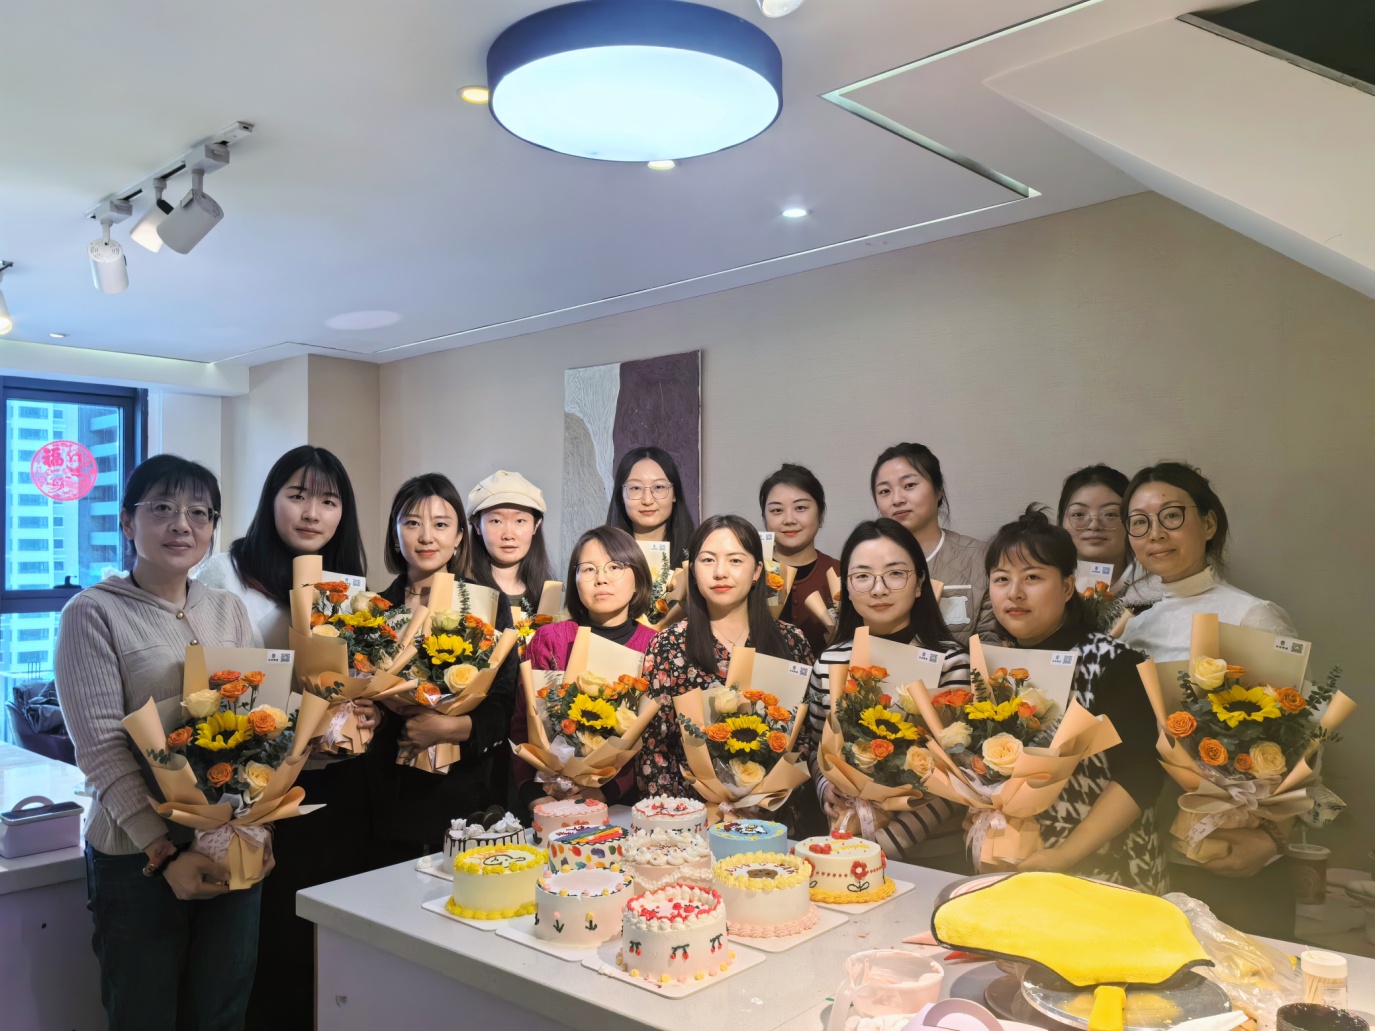 甘肃空管分局气象台分会举行庆“三八”甜蜜蛋糕DIY活动